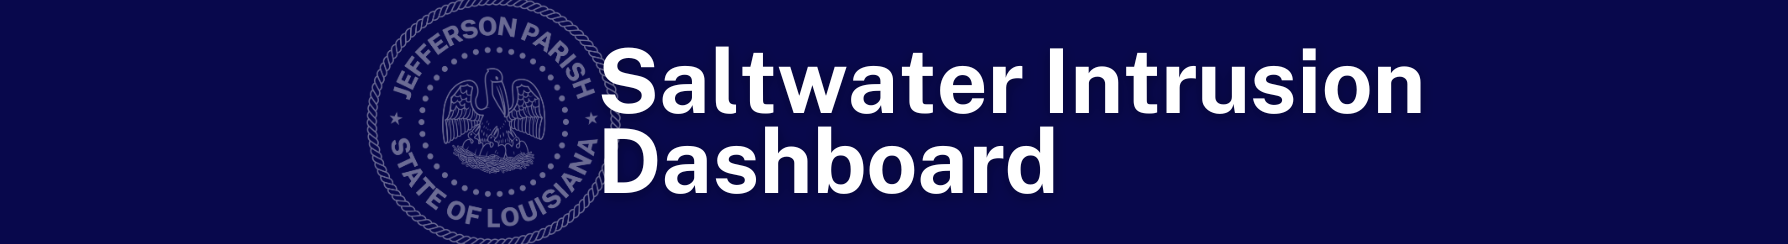 Saltwater Intrusion Dashboard